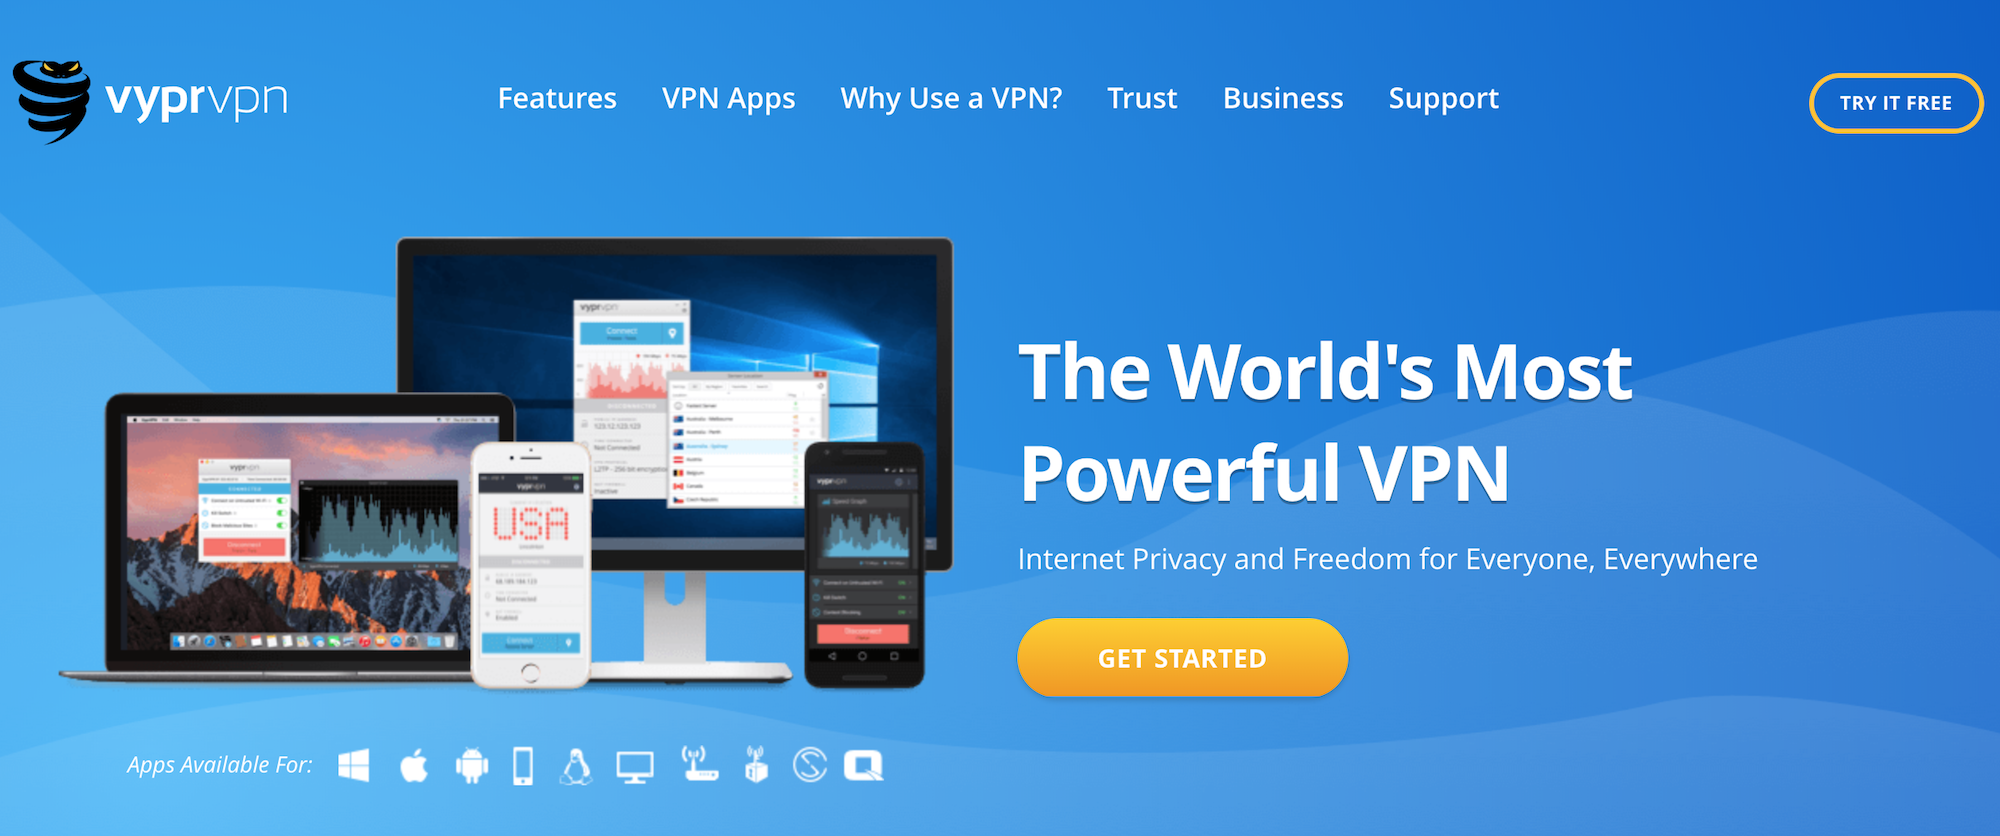 Vypr VPN Review 2018 